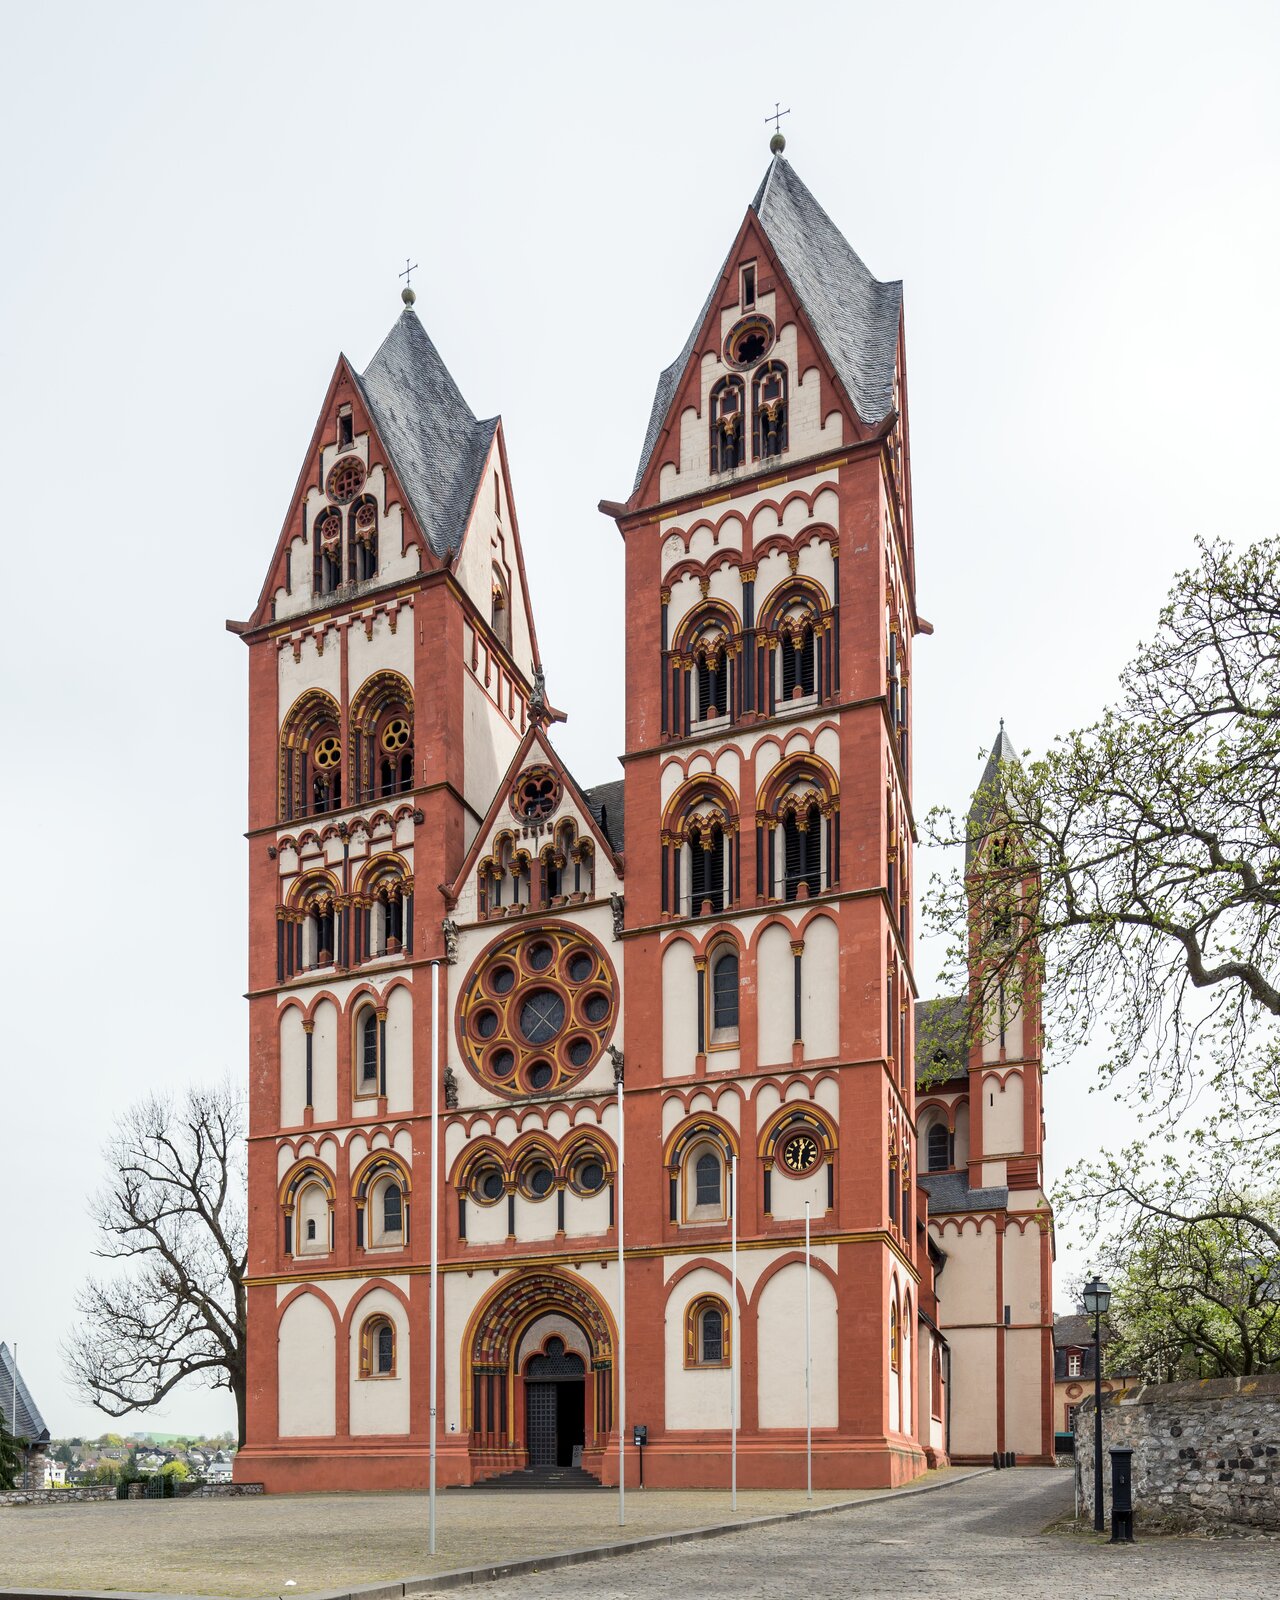 Ilustracja o kształcie pionowego prostokąta przedstawia katedrę w Limburgu. Na zdjęciu został przedstawiony widok od strony portalu wejściowego. Katedra jest trójnawową budowlą z dwiema wieżami usytuowanymi w portalach bocznych. Na wszystkich kondygnacjach dzielonych gzymsem, znajdują się okna. Nad głównym wejściem usytuowana jest  rozeta oraz trójkątny szczyt.  Każda strona wieży zakończona jest wimpergą. 